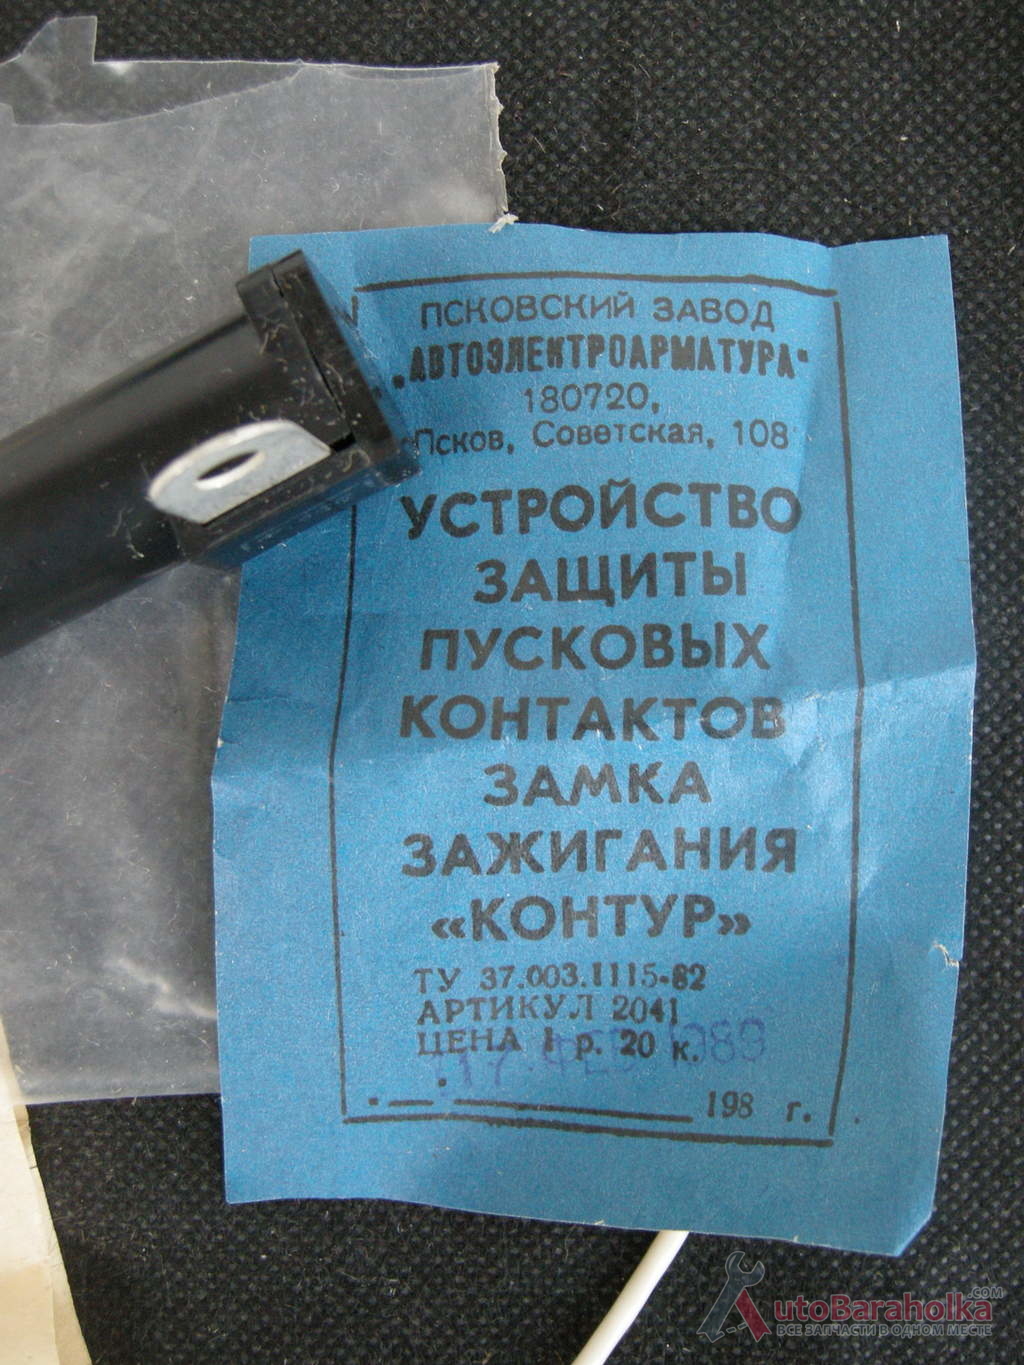 Продам Устройство защиты пусковых контактов замка зажигания для ВАЗ, сделано в СССР Харьков